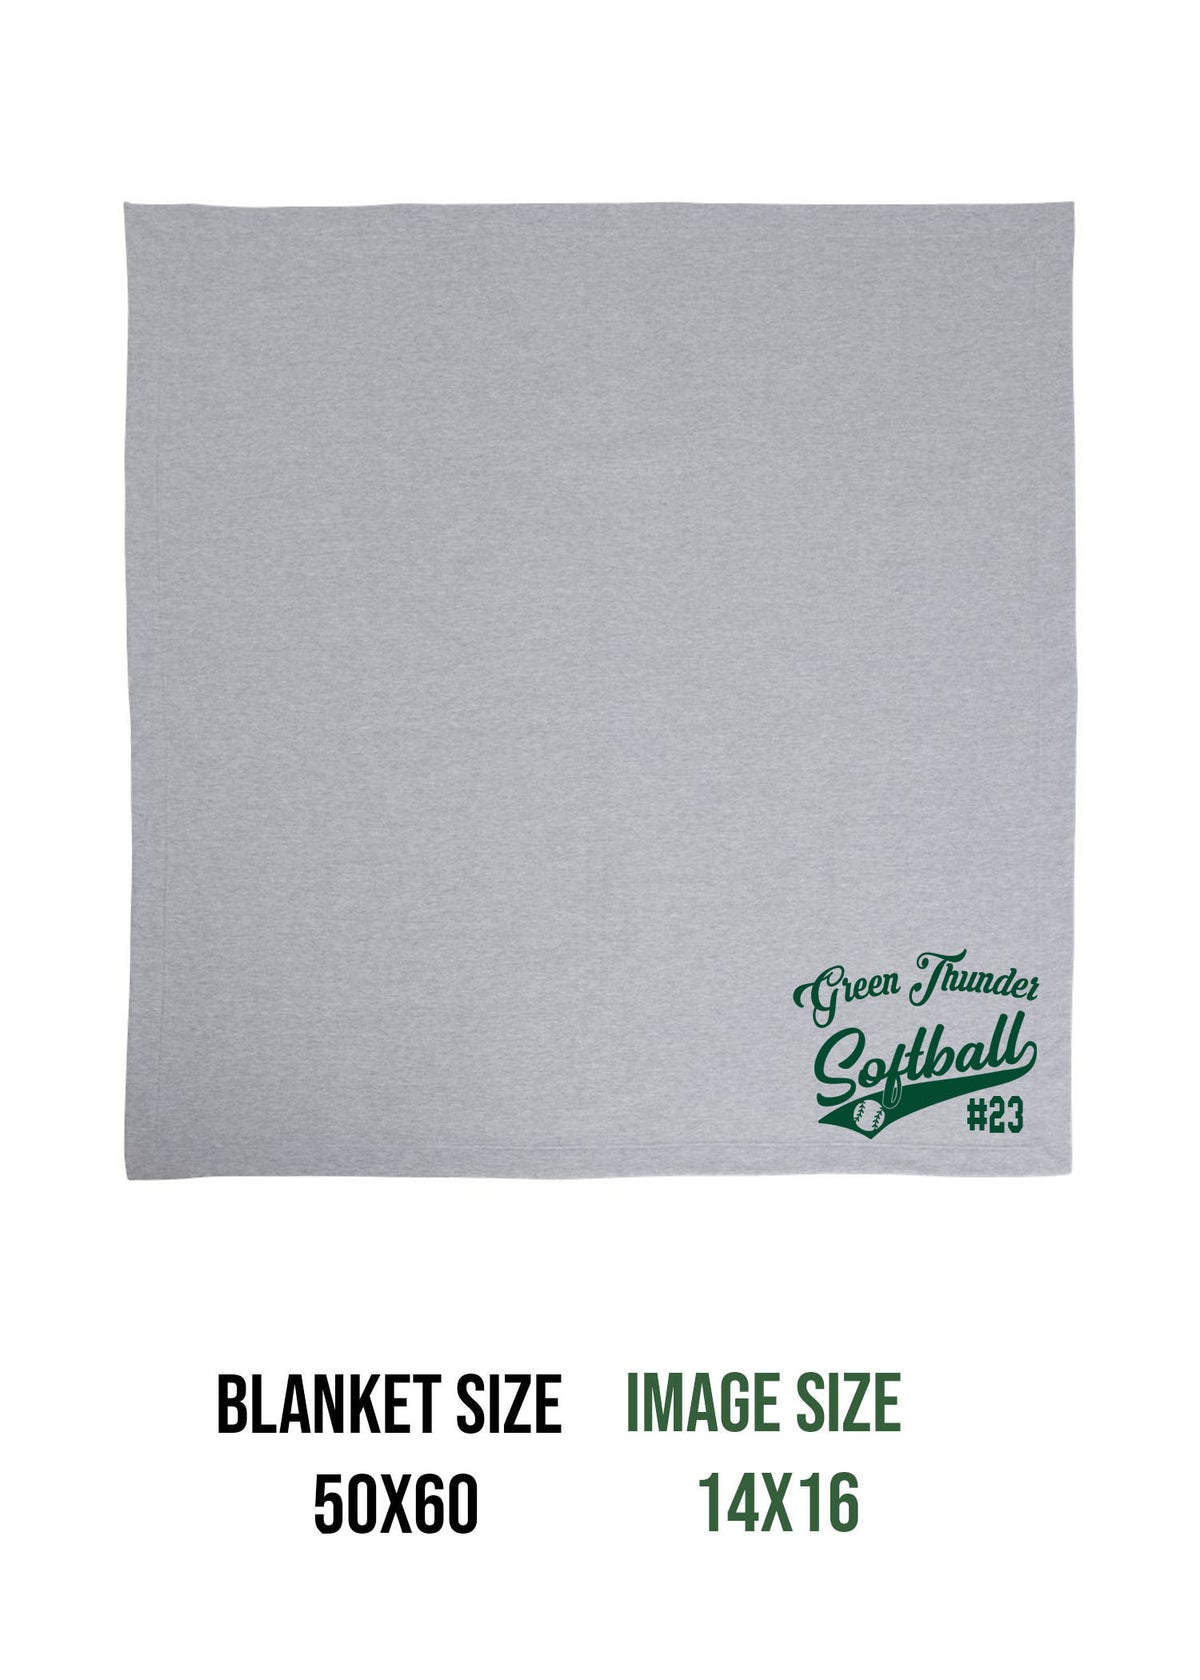 Green Thunder Design 2 Blanket